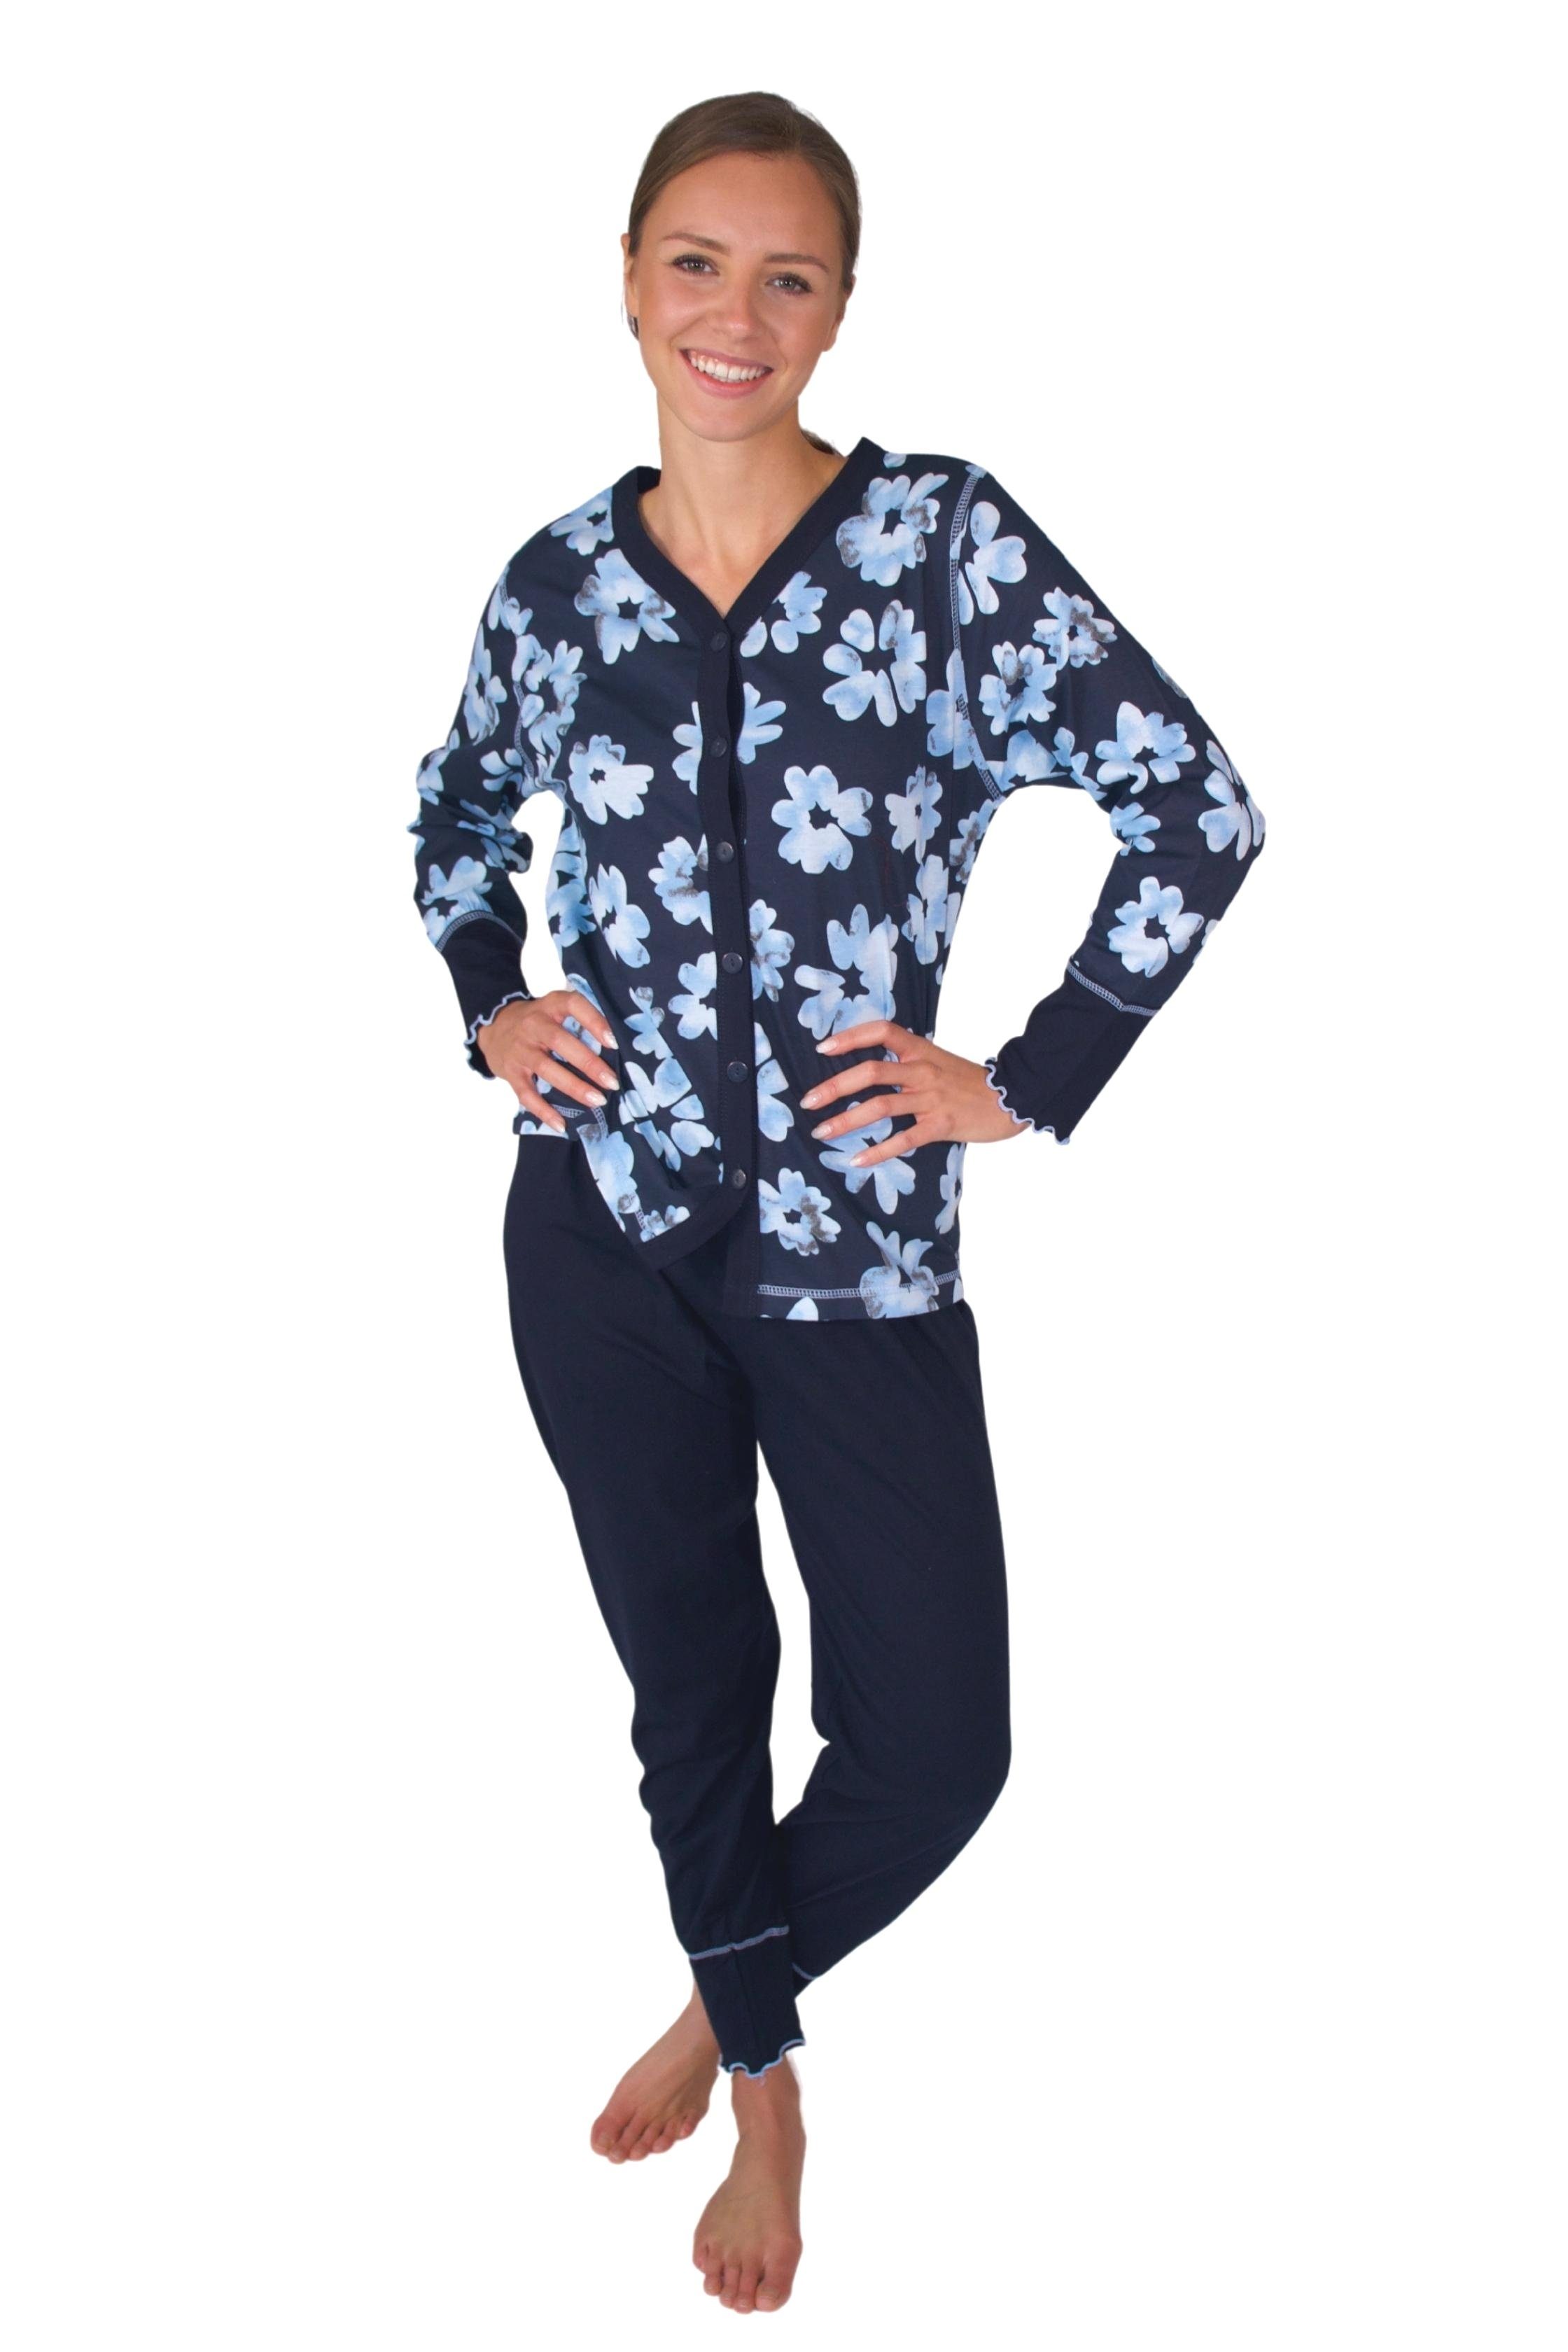 Qualität Damen Schlafanzug Pyjama weicher aus DW311blau Pyjama Consult-Tex Baumwolle-Jersey